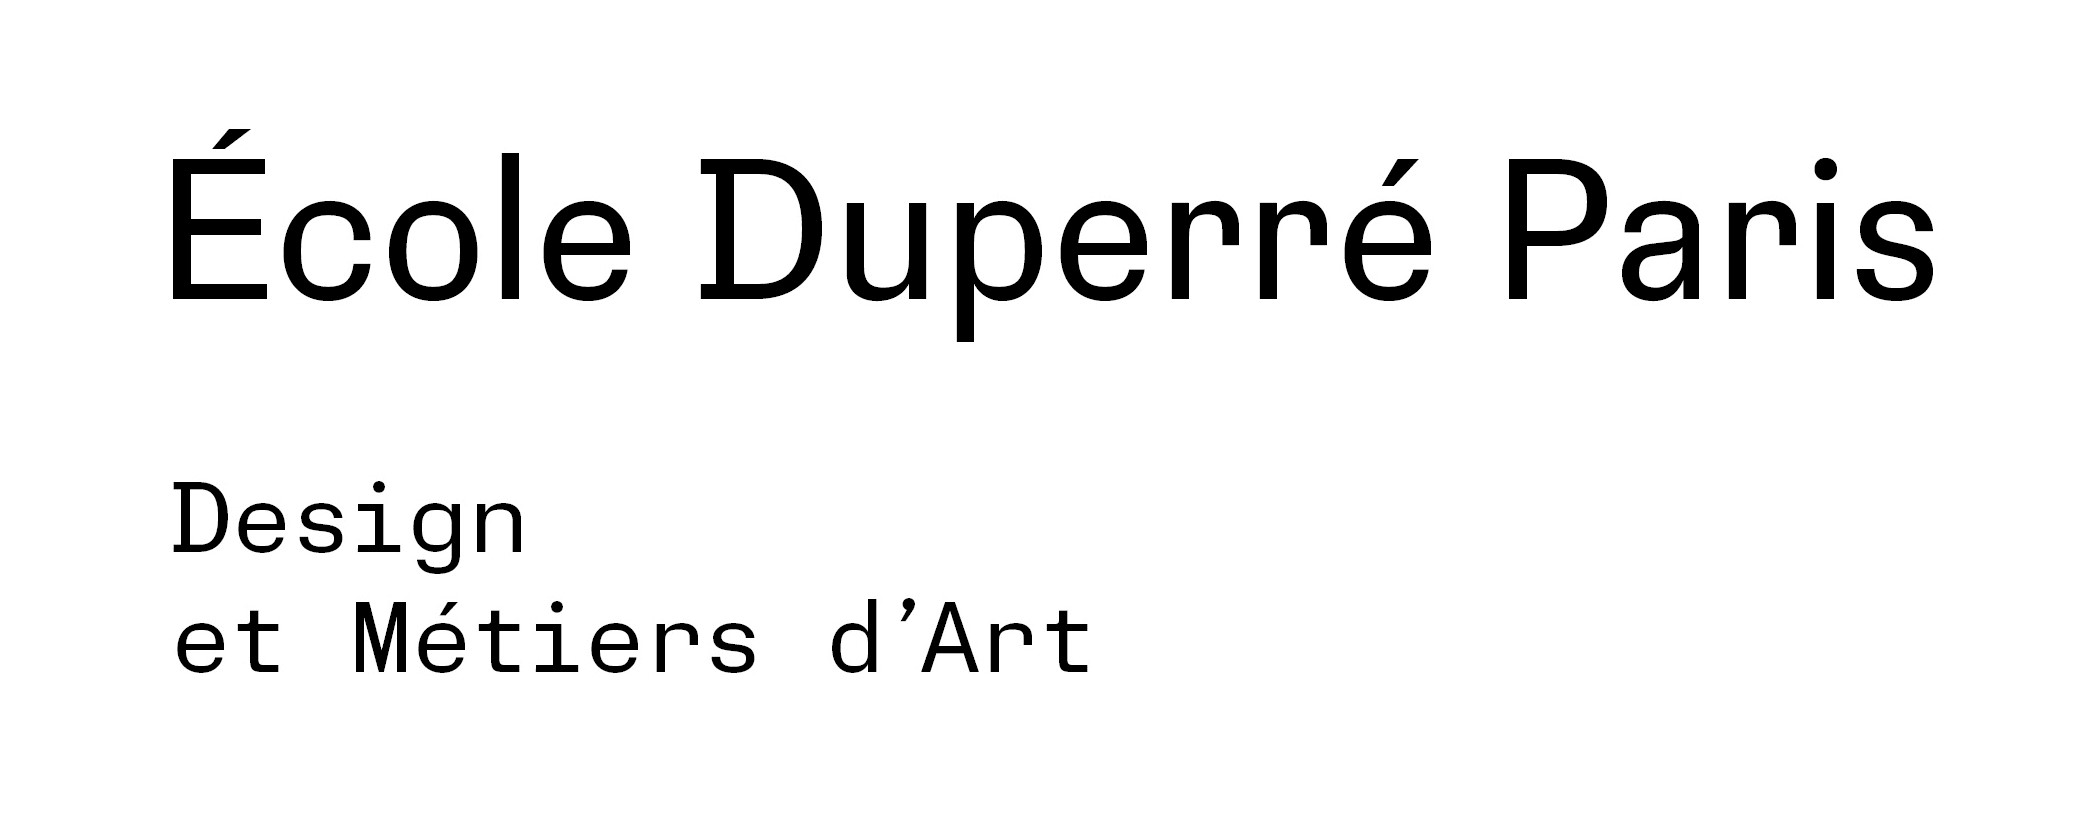 École Duperré Paris